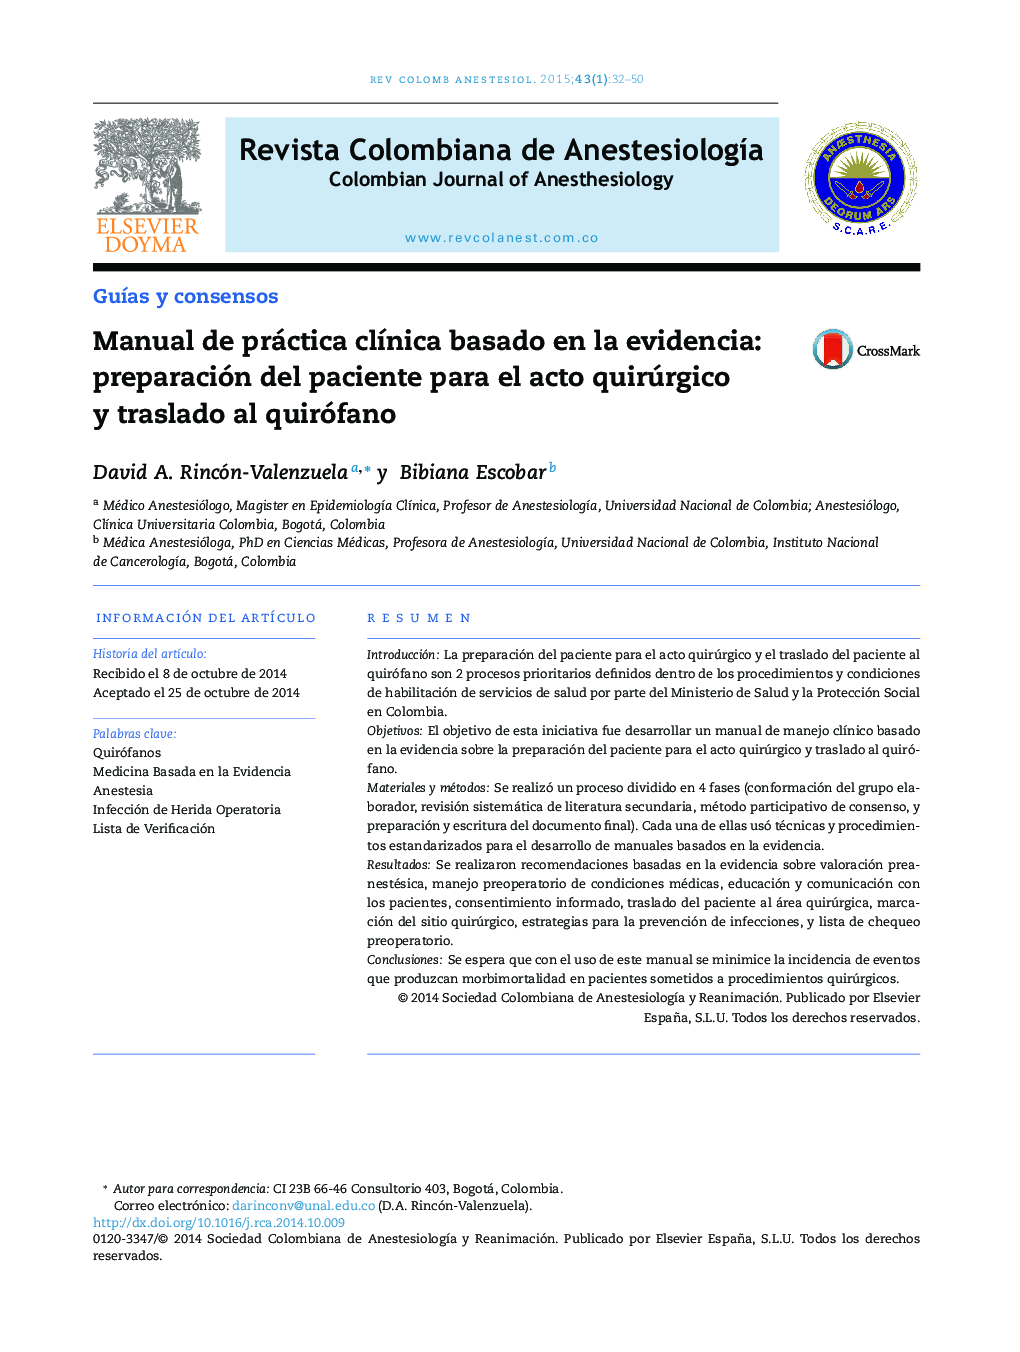 Manual de práctica clínica basado en la evidencia: preparación del paciente para el acto quirúrgico y traslado al quirófano